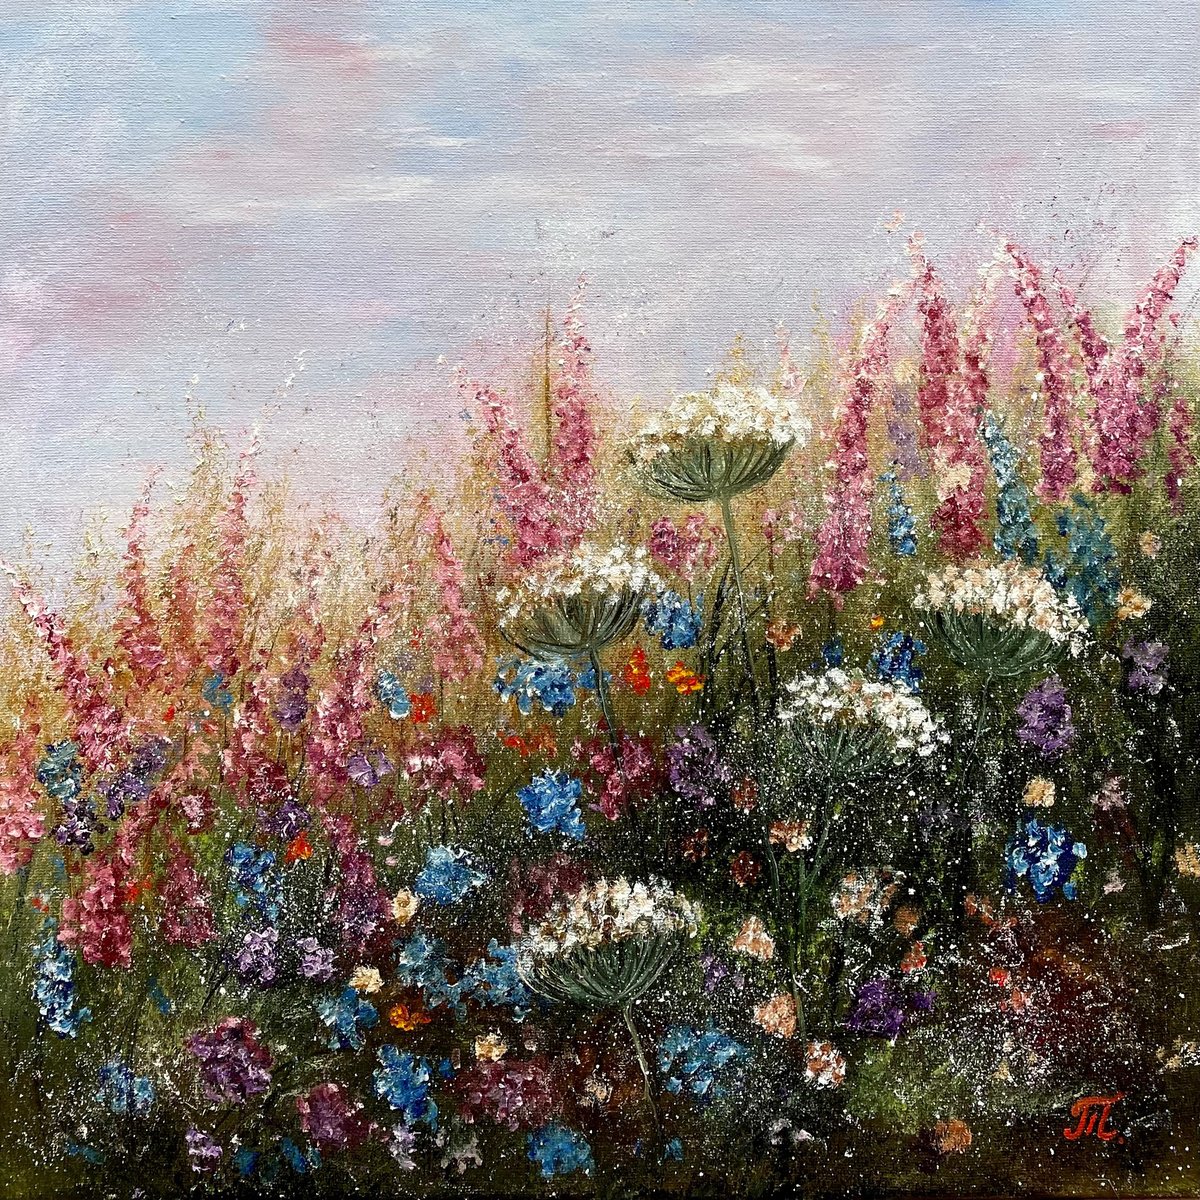 Best meadow flowers by Tanja Frost